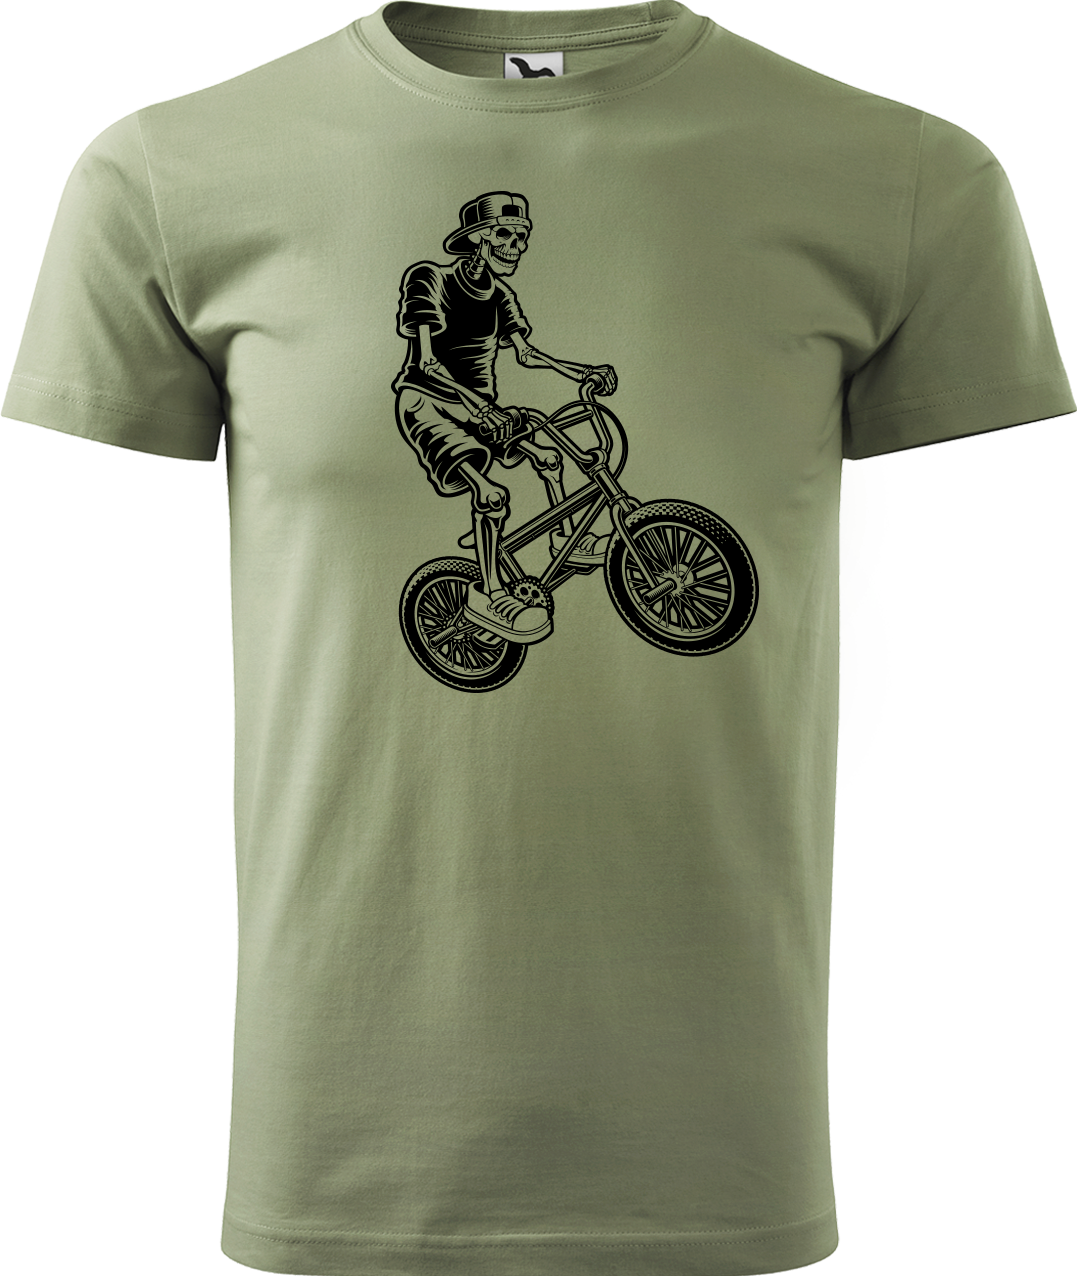 Pánské tričko s kolem - Trial Bike Velikost: XL, Barva: Světlá khaki (28)